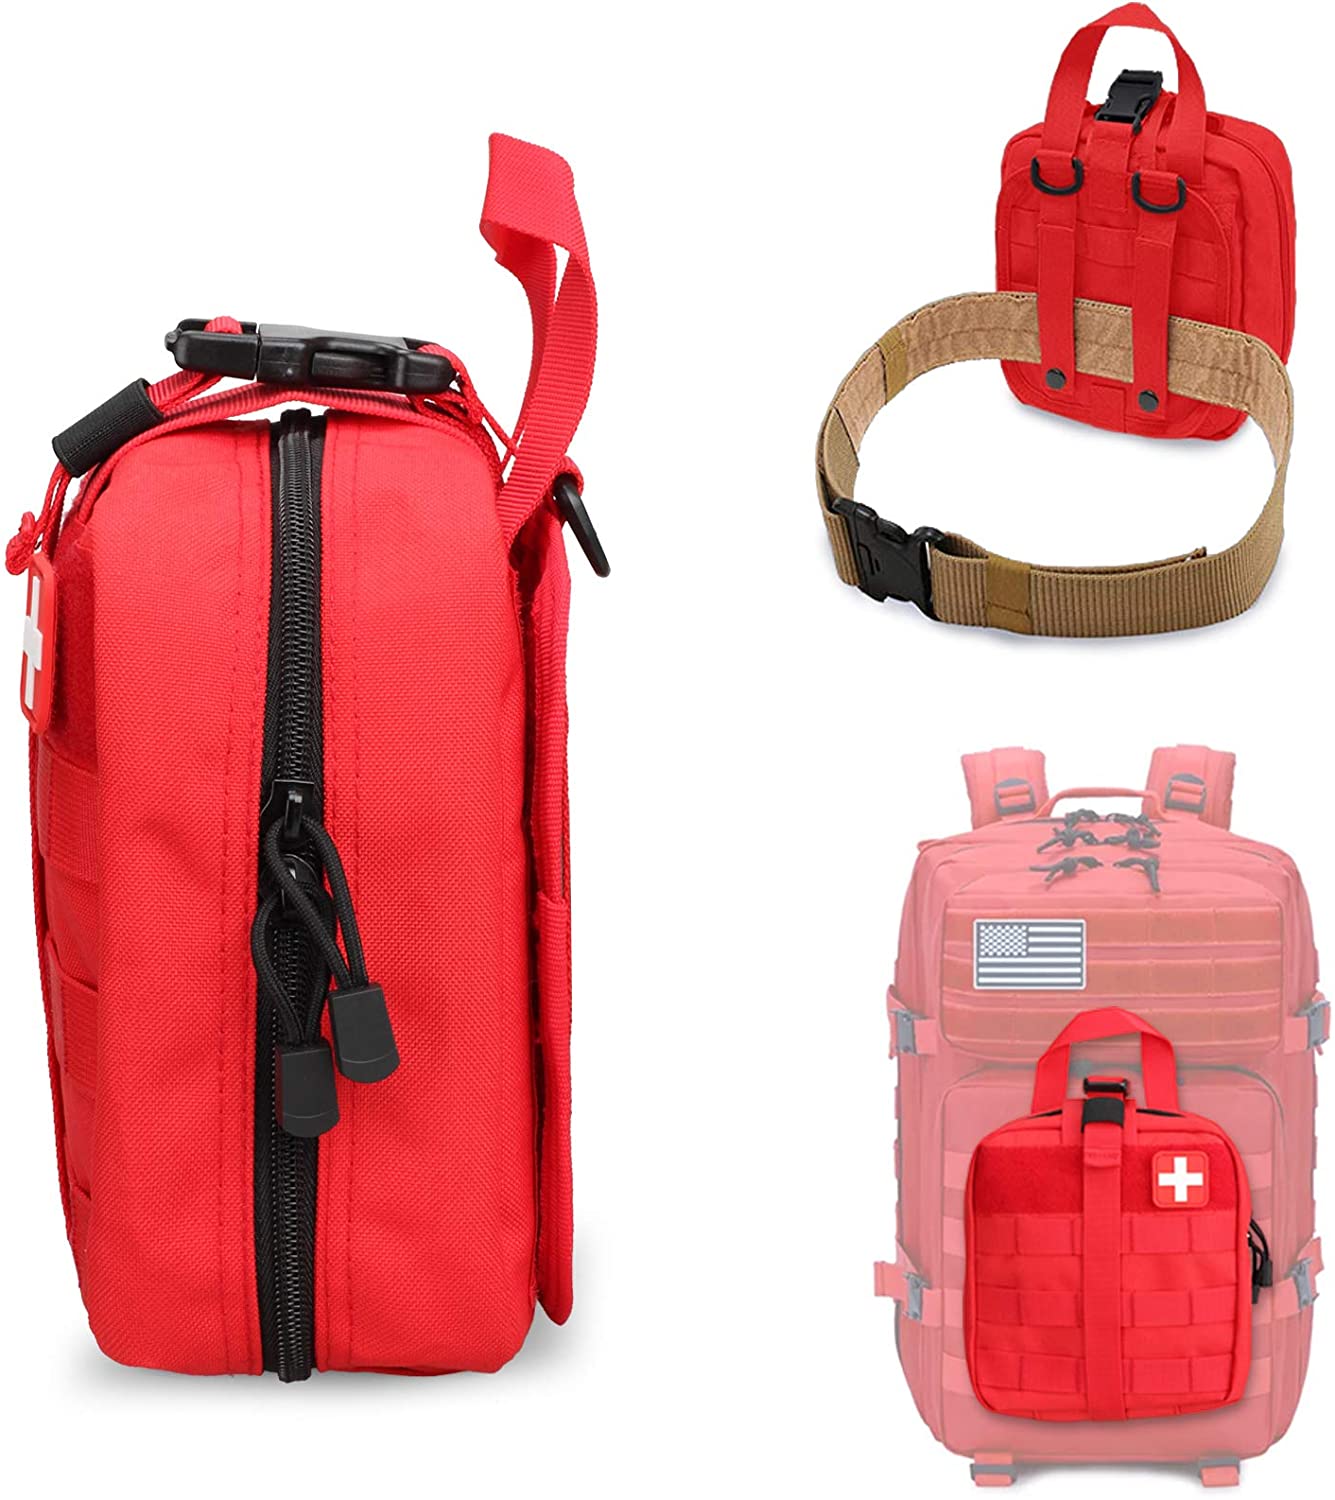 La bolsa médica militar de primeros auxilios tácticos rojos incluye el parche de la Cruz Roja - 4